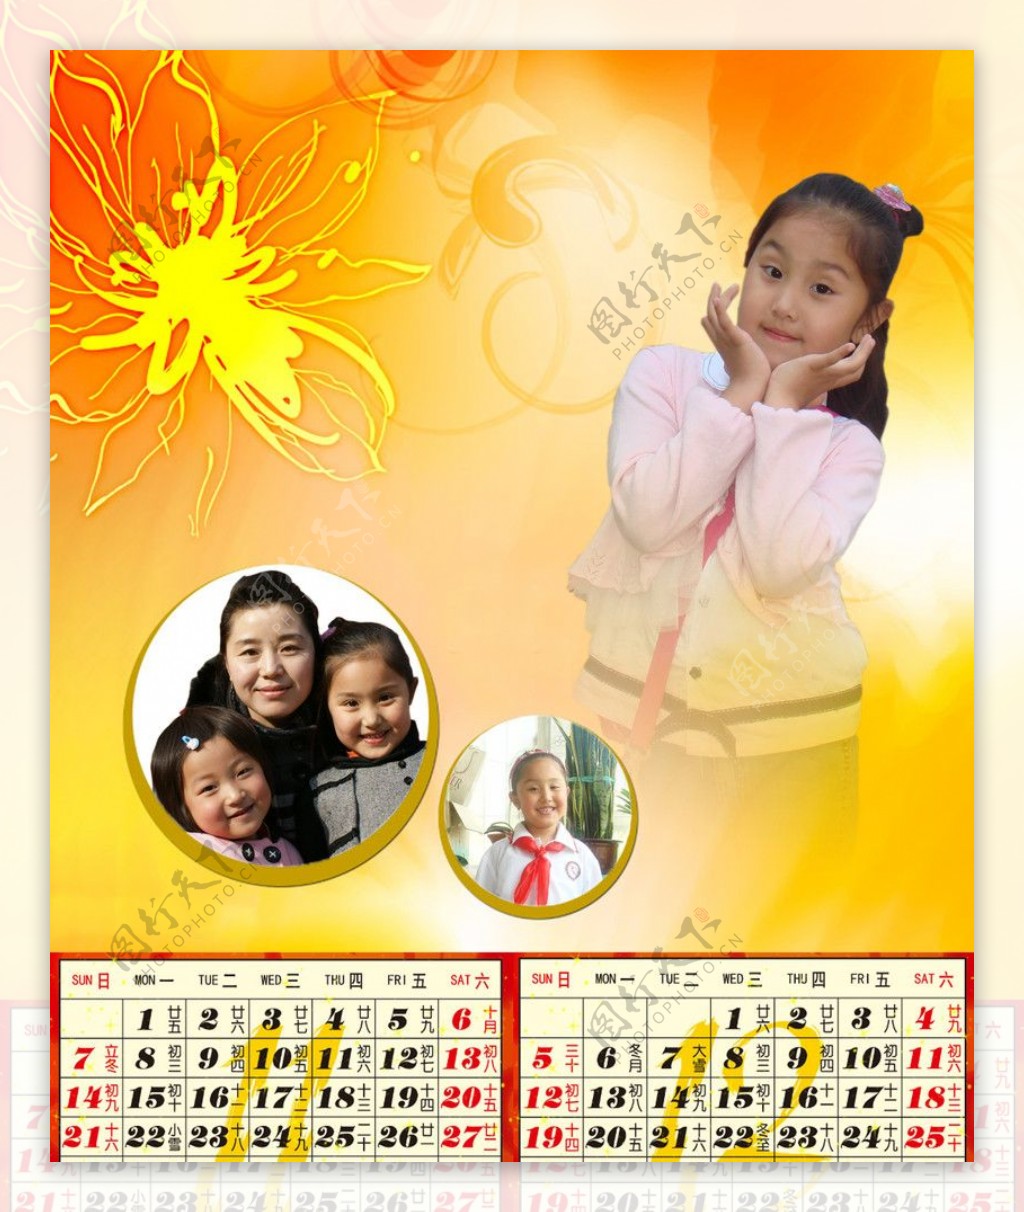 2010年新年快乐挂历封面图片